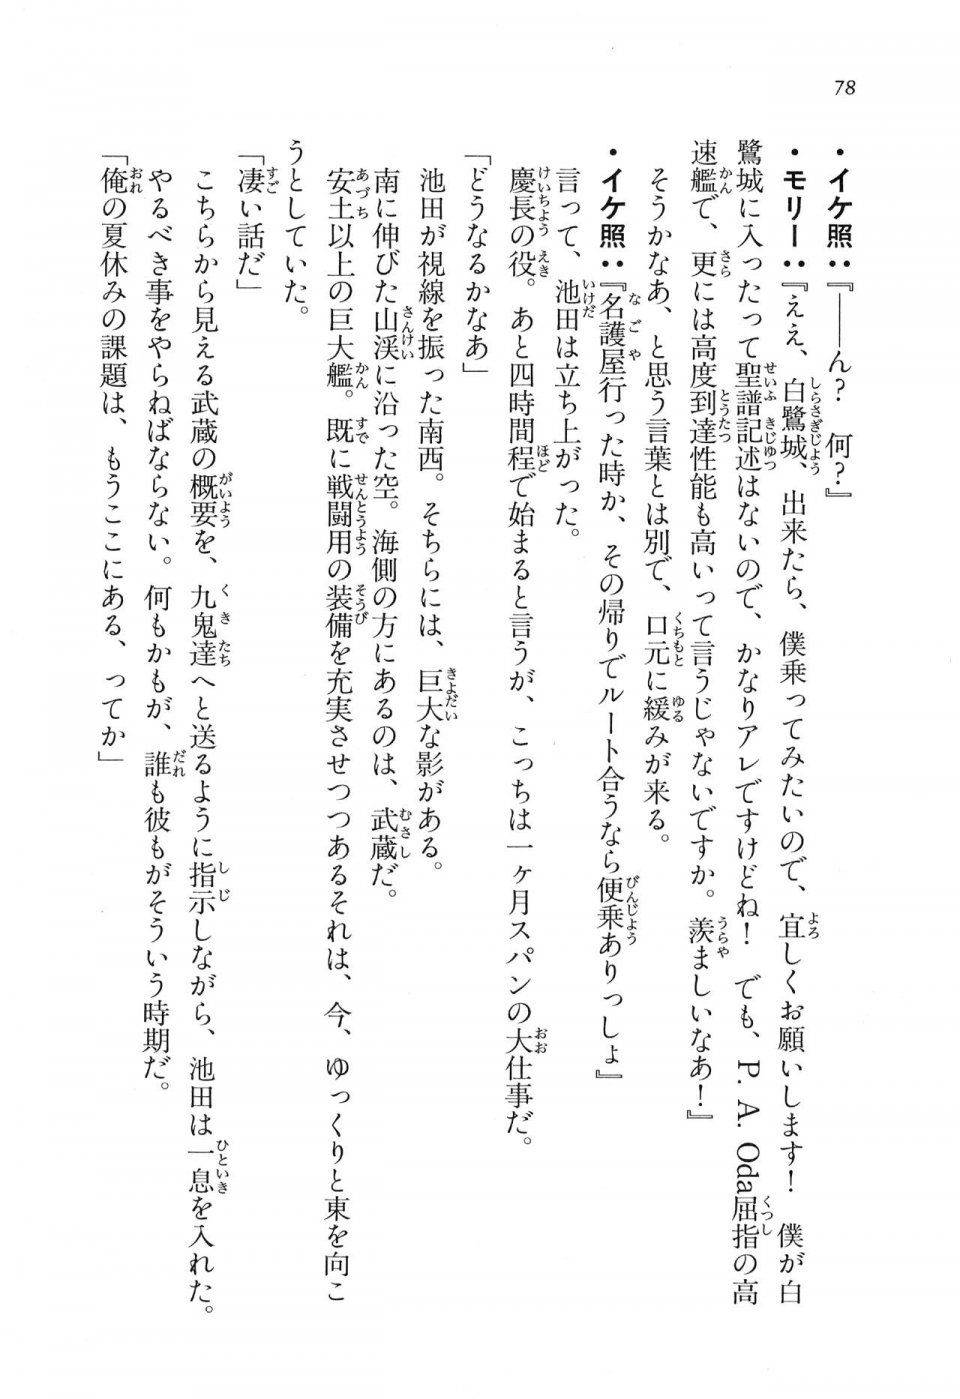 Kyoukai Senjou no Horizon LN Vol 16(7A) - Photo #78